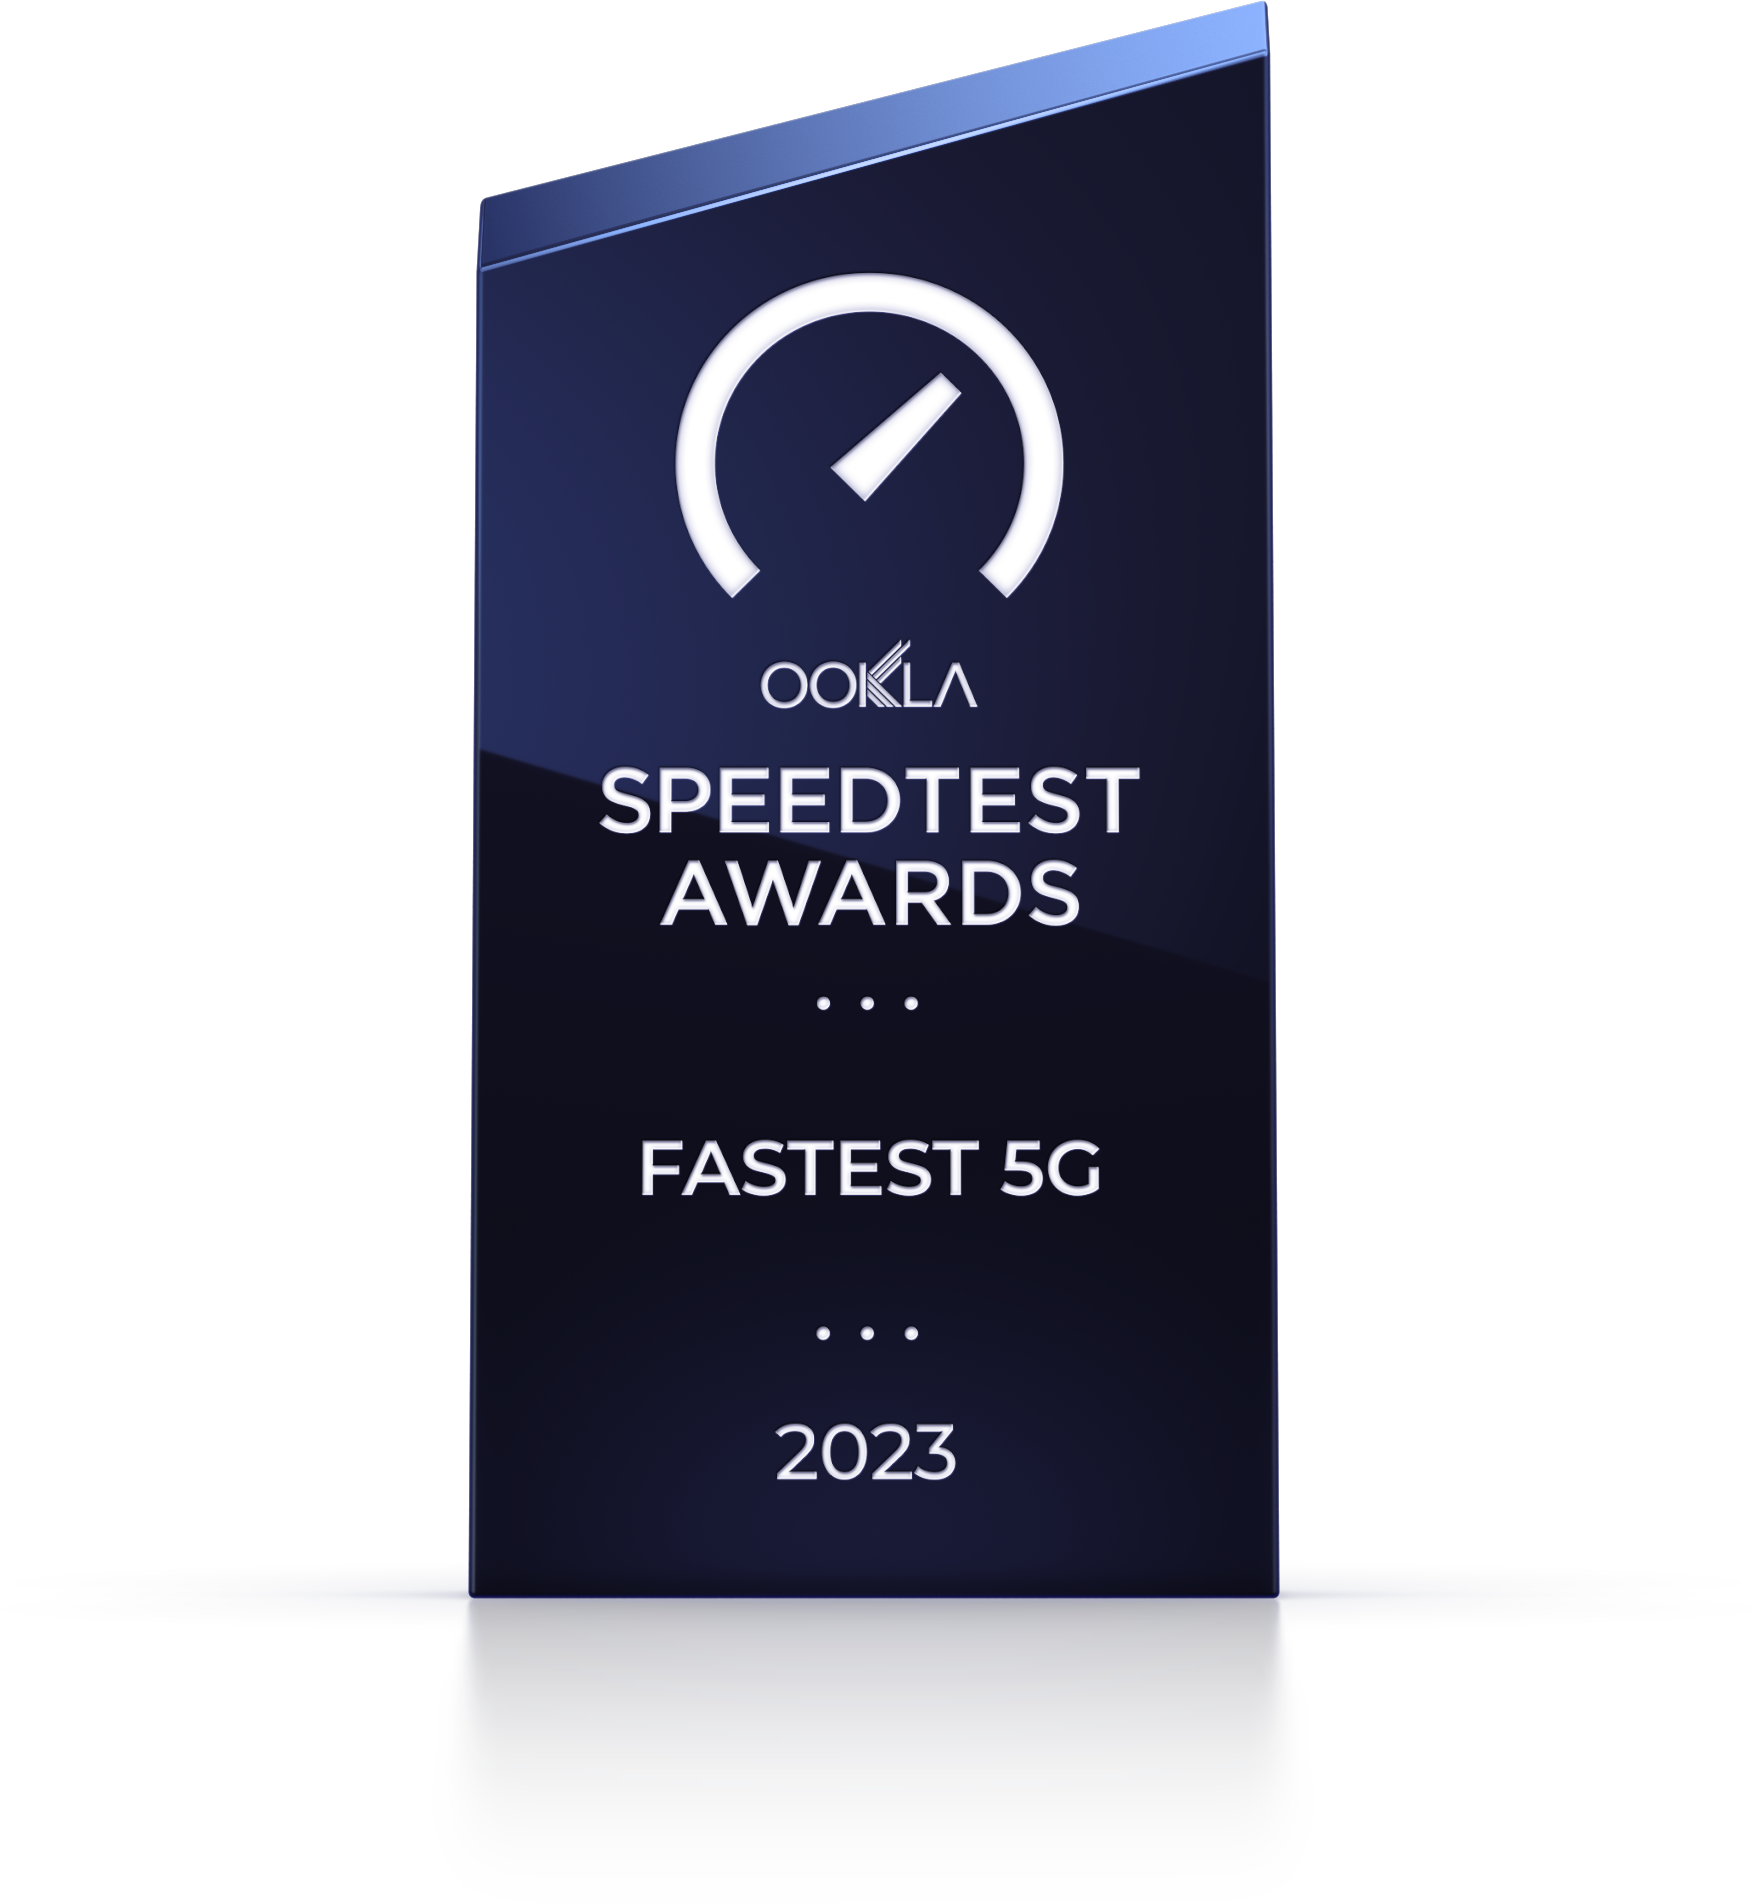 Speedtest Awards - Fastest 5G 2023